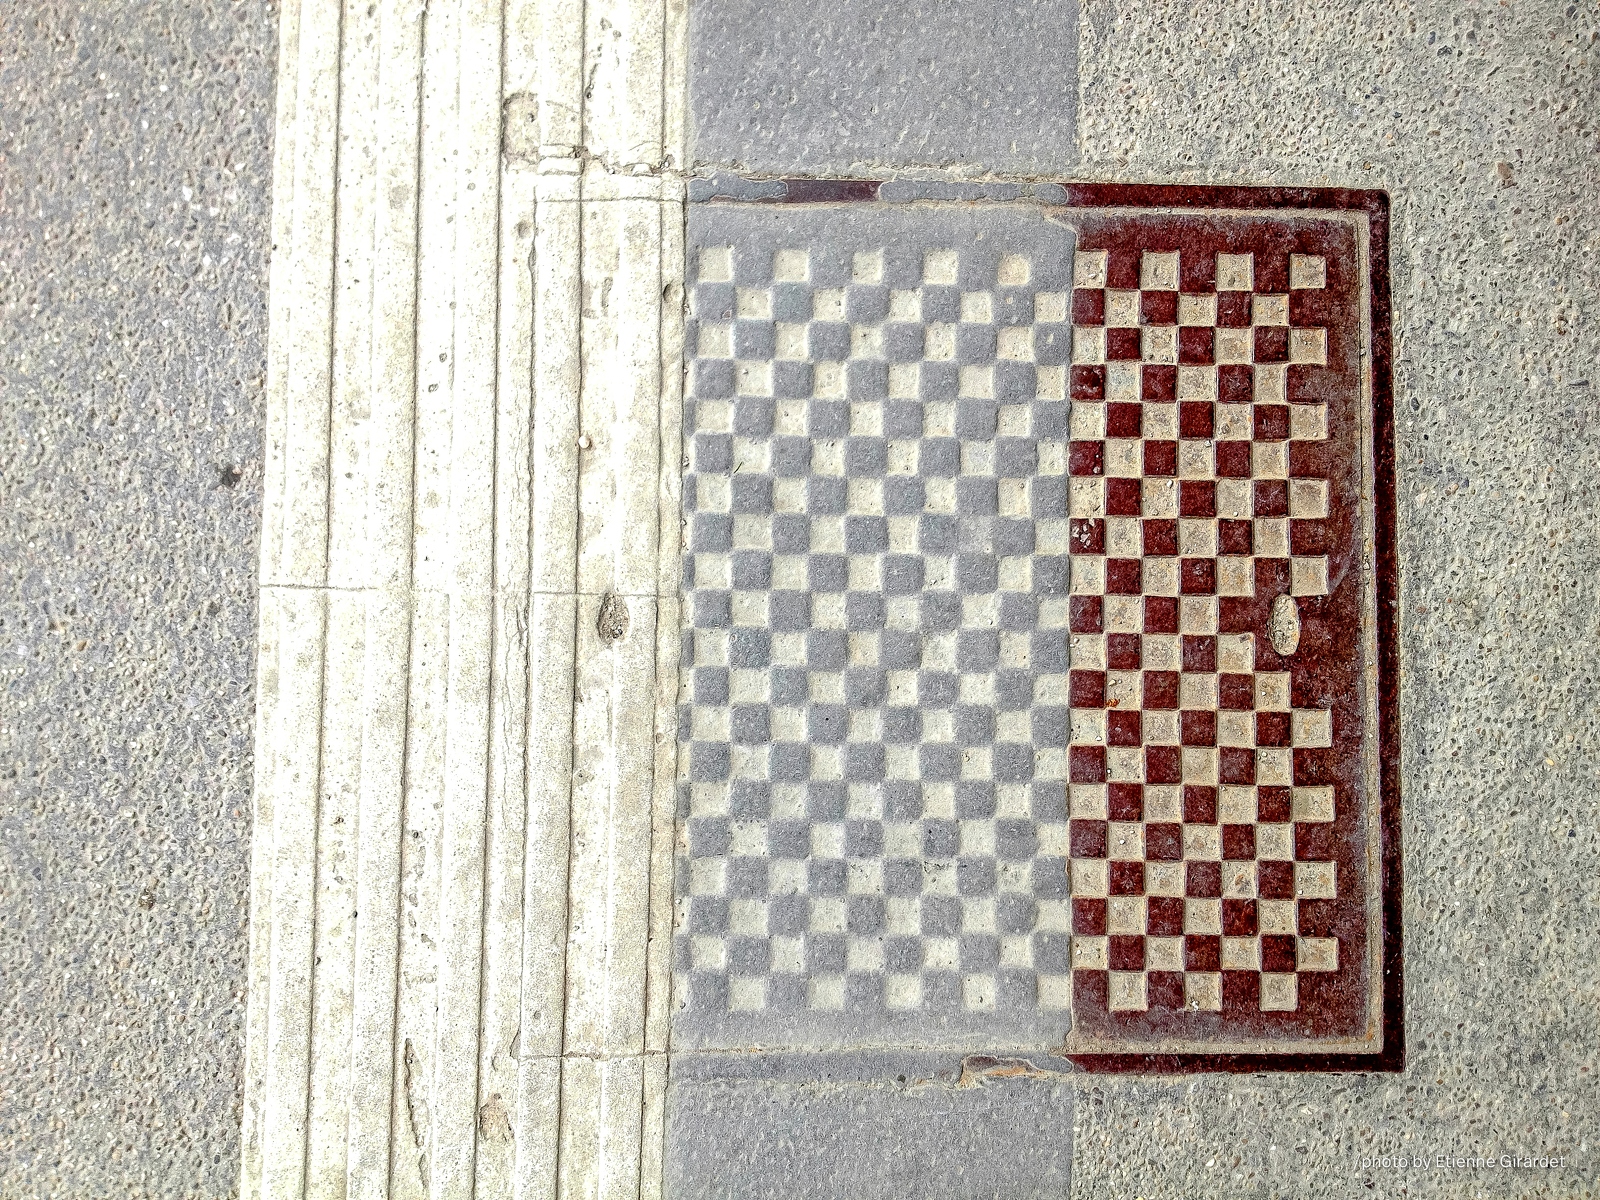 201203_31_IMG_2544-manhole-cover--by-E-Girardet.jpg